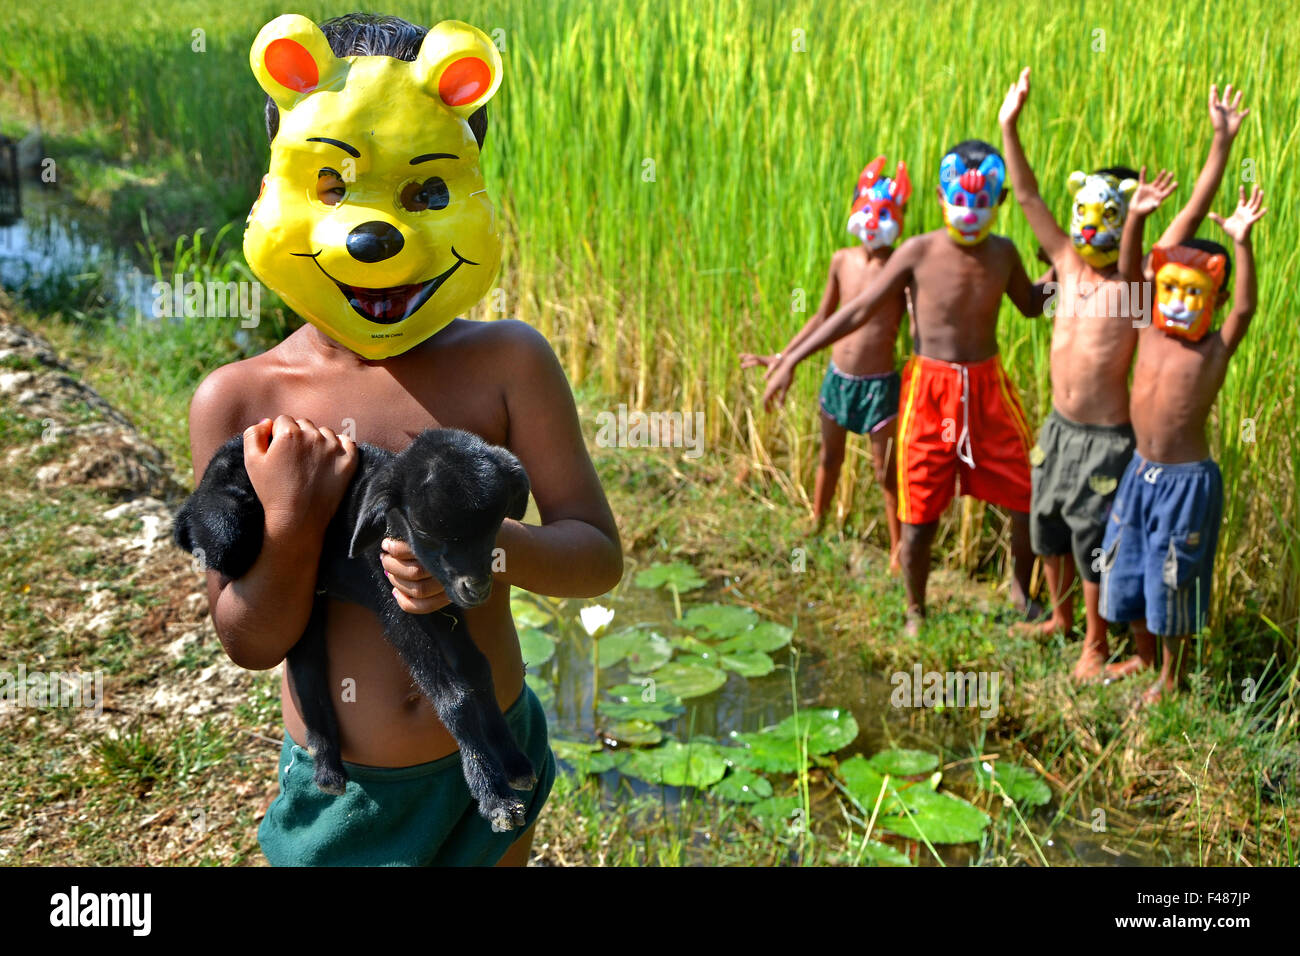 Freundschaft - erfreuen sich die abgelegenen Dorf-Kinder auf der grünen Wiese Paddy. Stockfoto